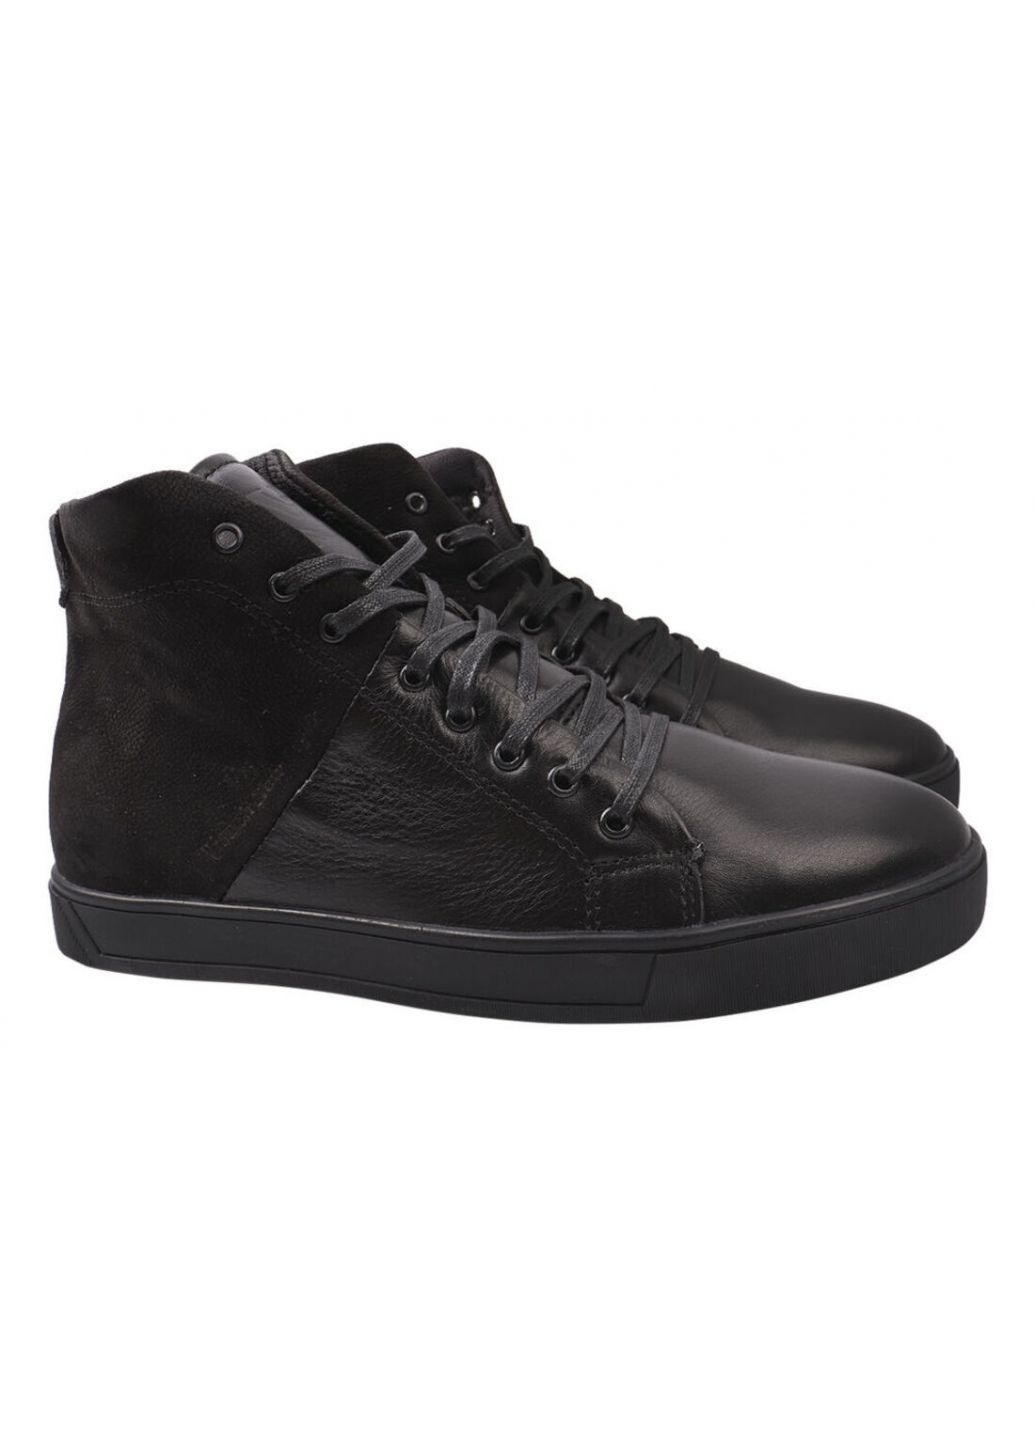 Черные ботинки мужские из натуральной кожи, на шнуровке, черные, Visazh